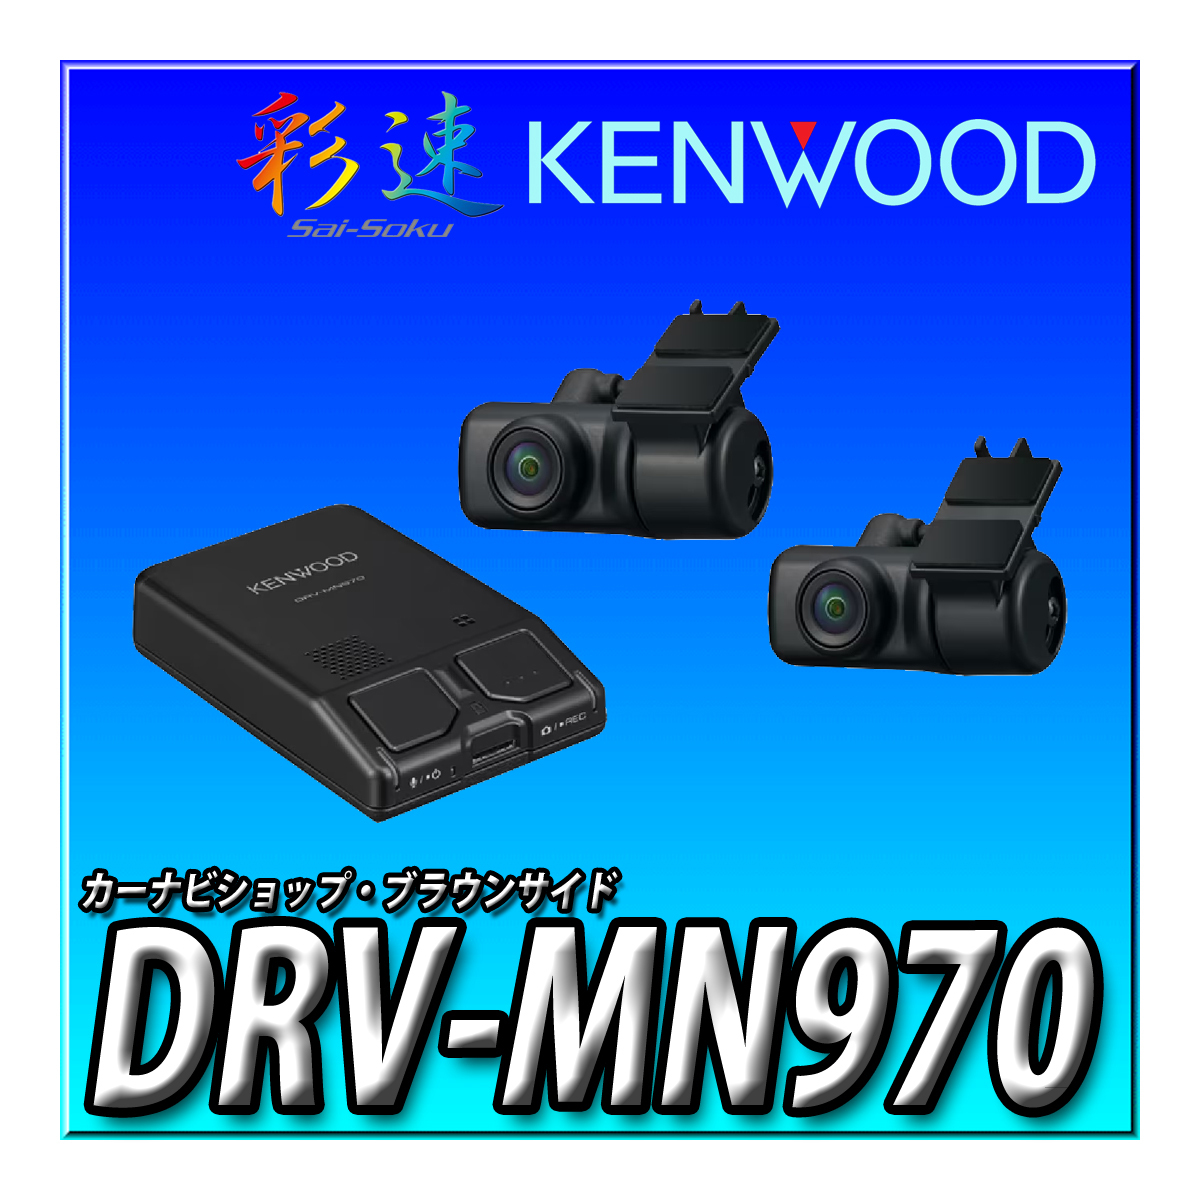 MDV-M910HDF+ハイエース200系取付キット＋パノラミック接続キット一式＋ETC-N3000＋DRV-MN970＋KNA-17AV 9インチフローティングナビ_画像3